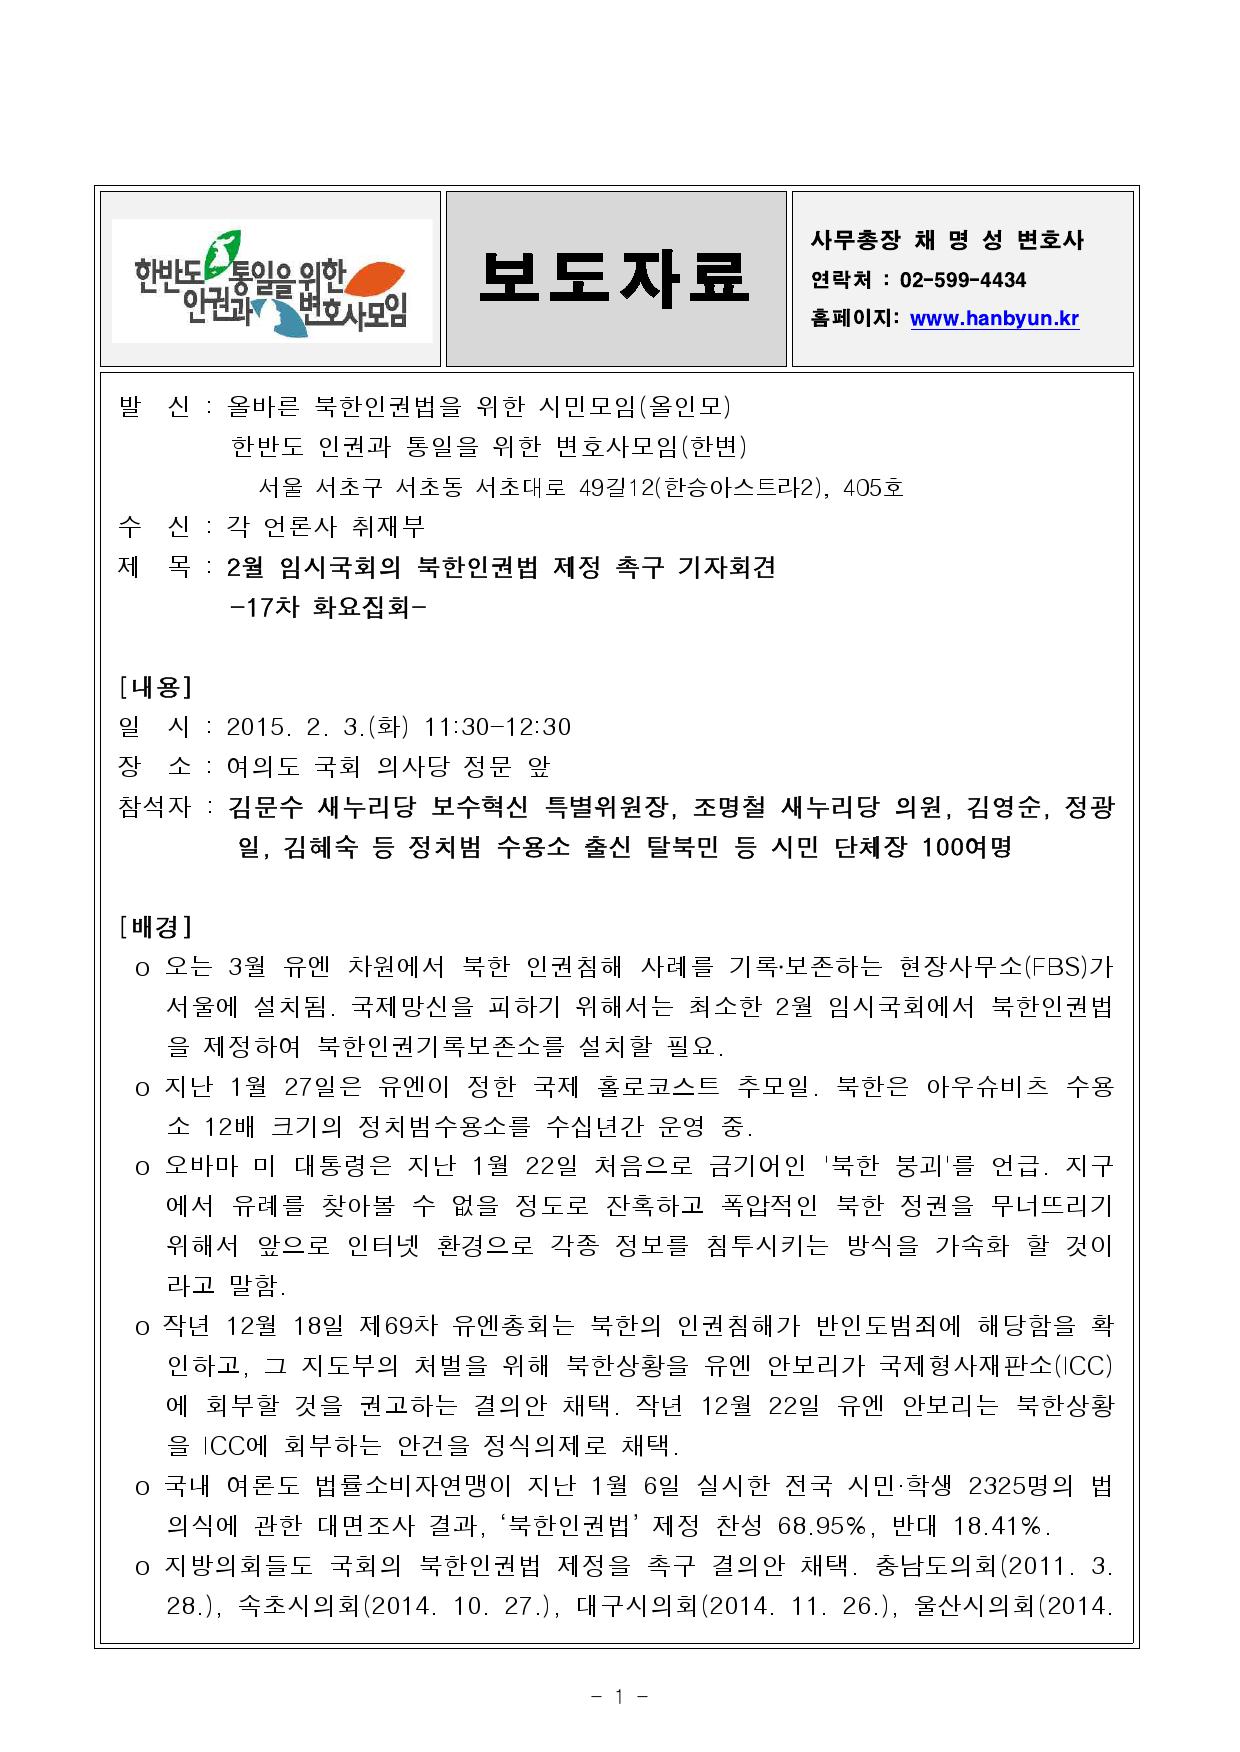 첨부보도자료 한변 올인모와 제17차 화요집회 개최 2015.2.3_000001.jpg